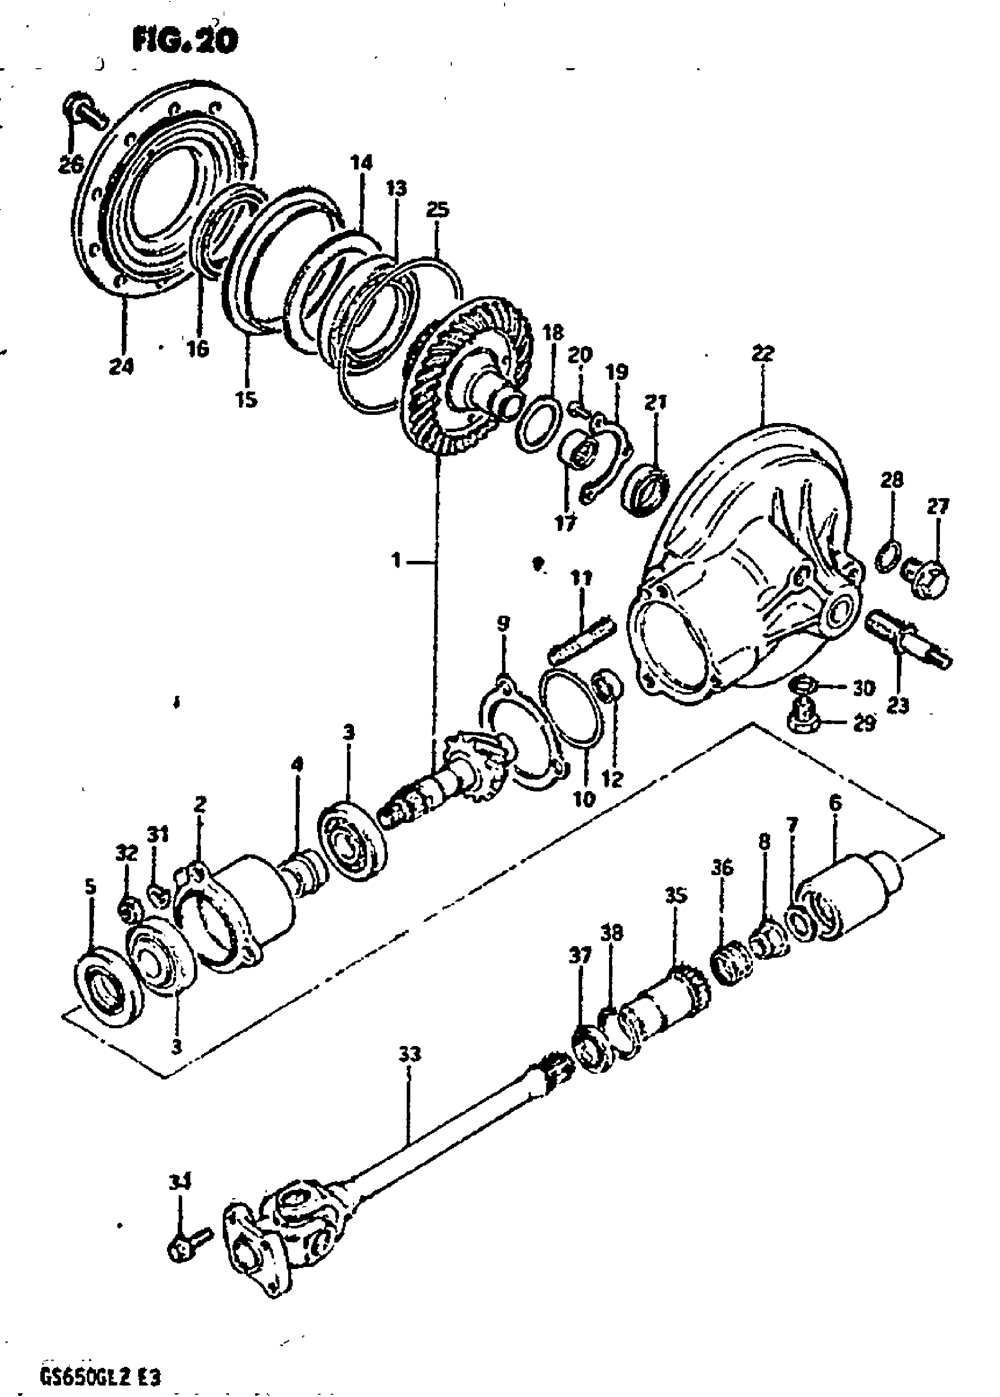 Propeller shaft-final drive gear